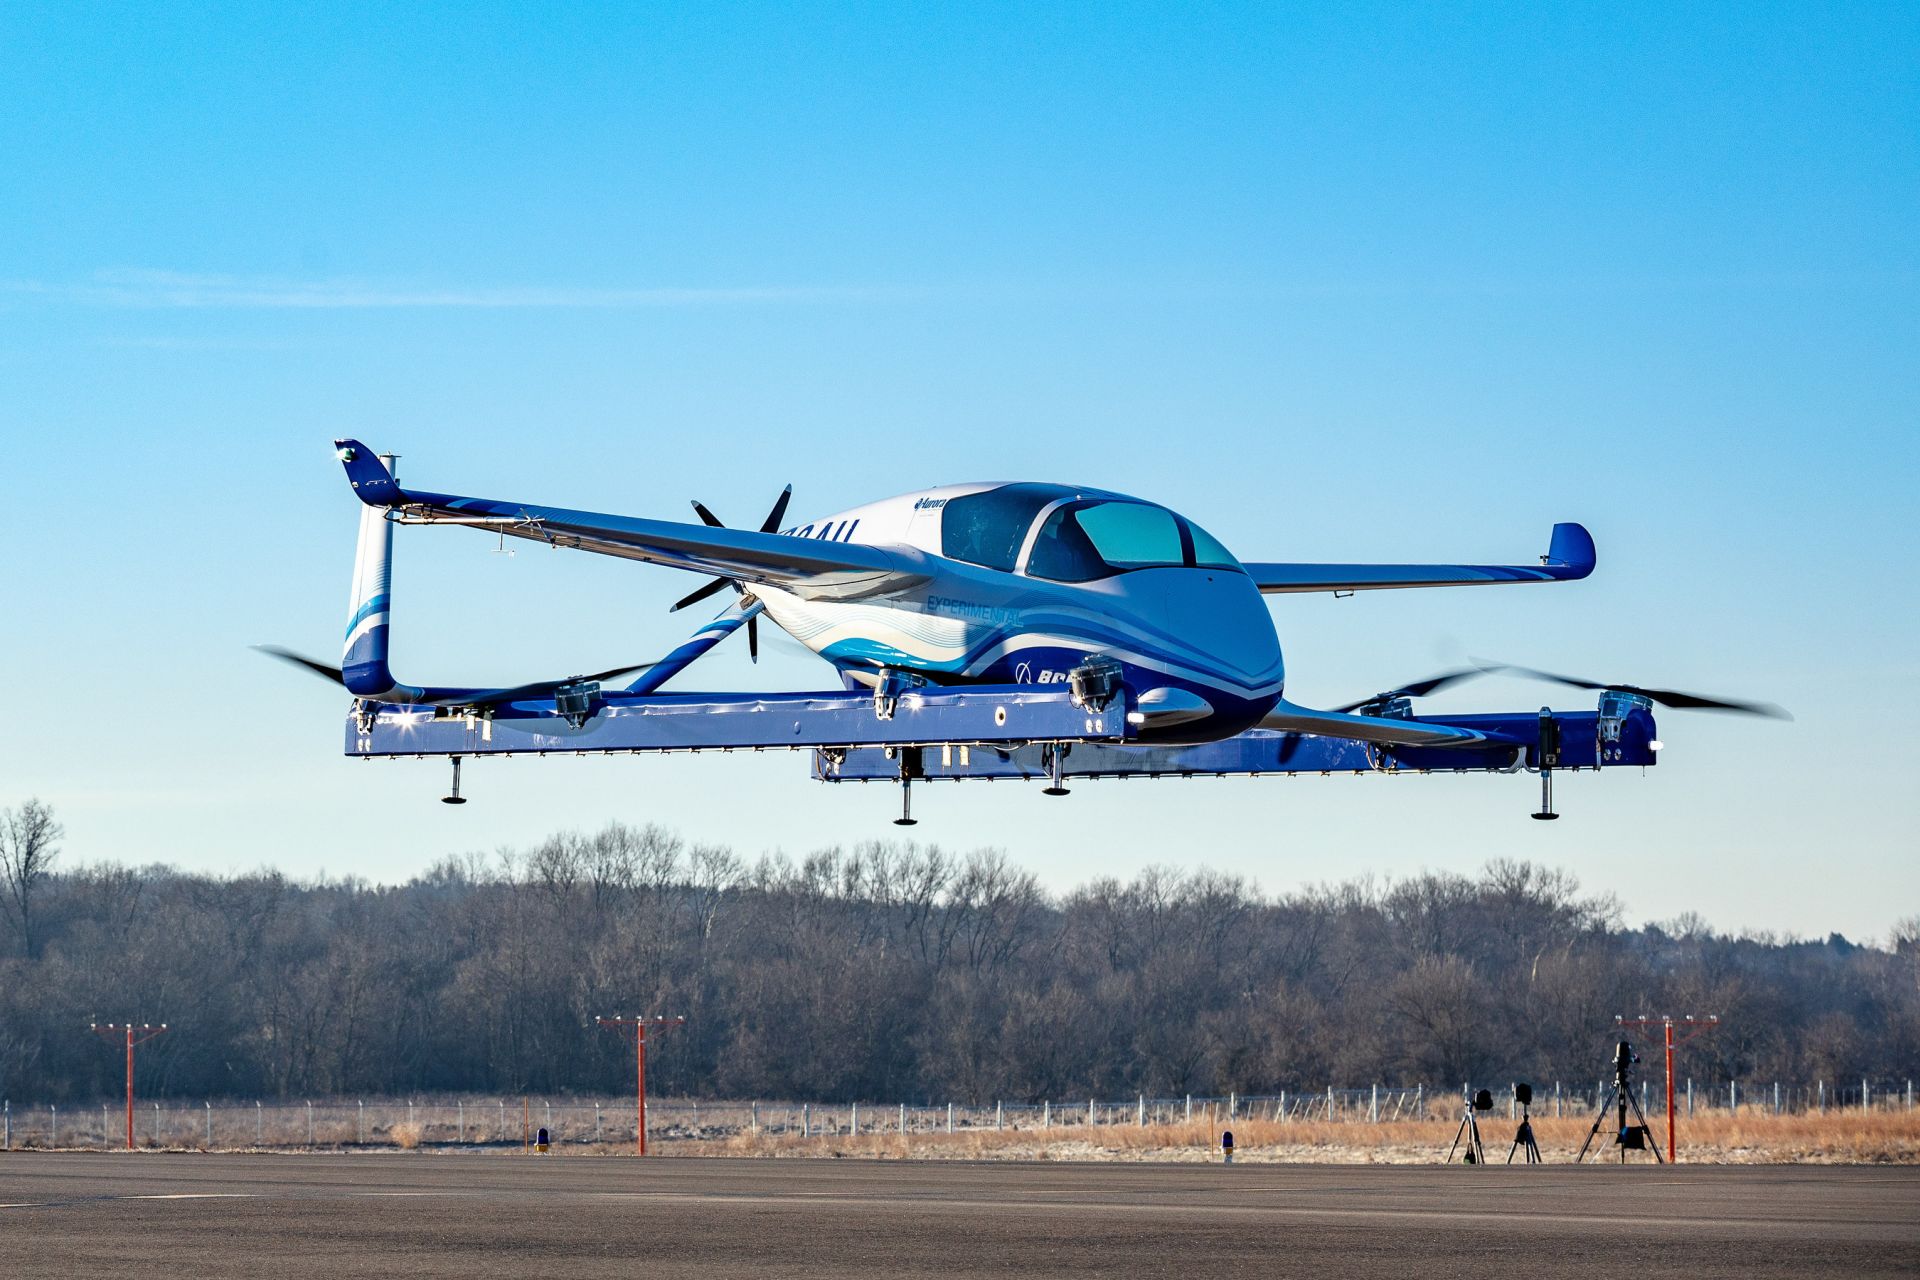 Letadlo eVTOL (electric vertical takeoff and landing), které poprvé vzlétlo v lednu 2019. Foto: Boeing